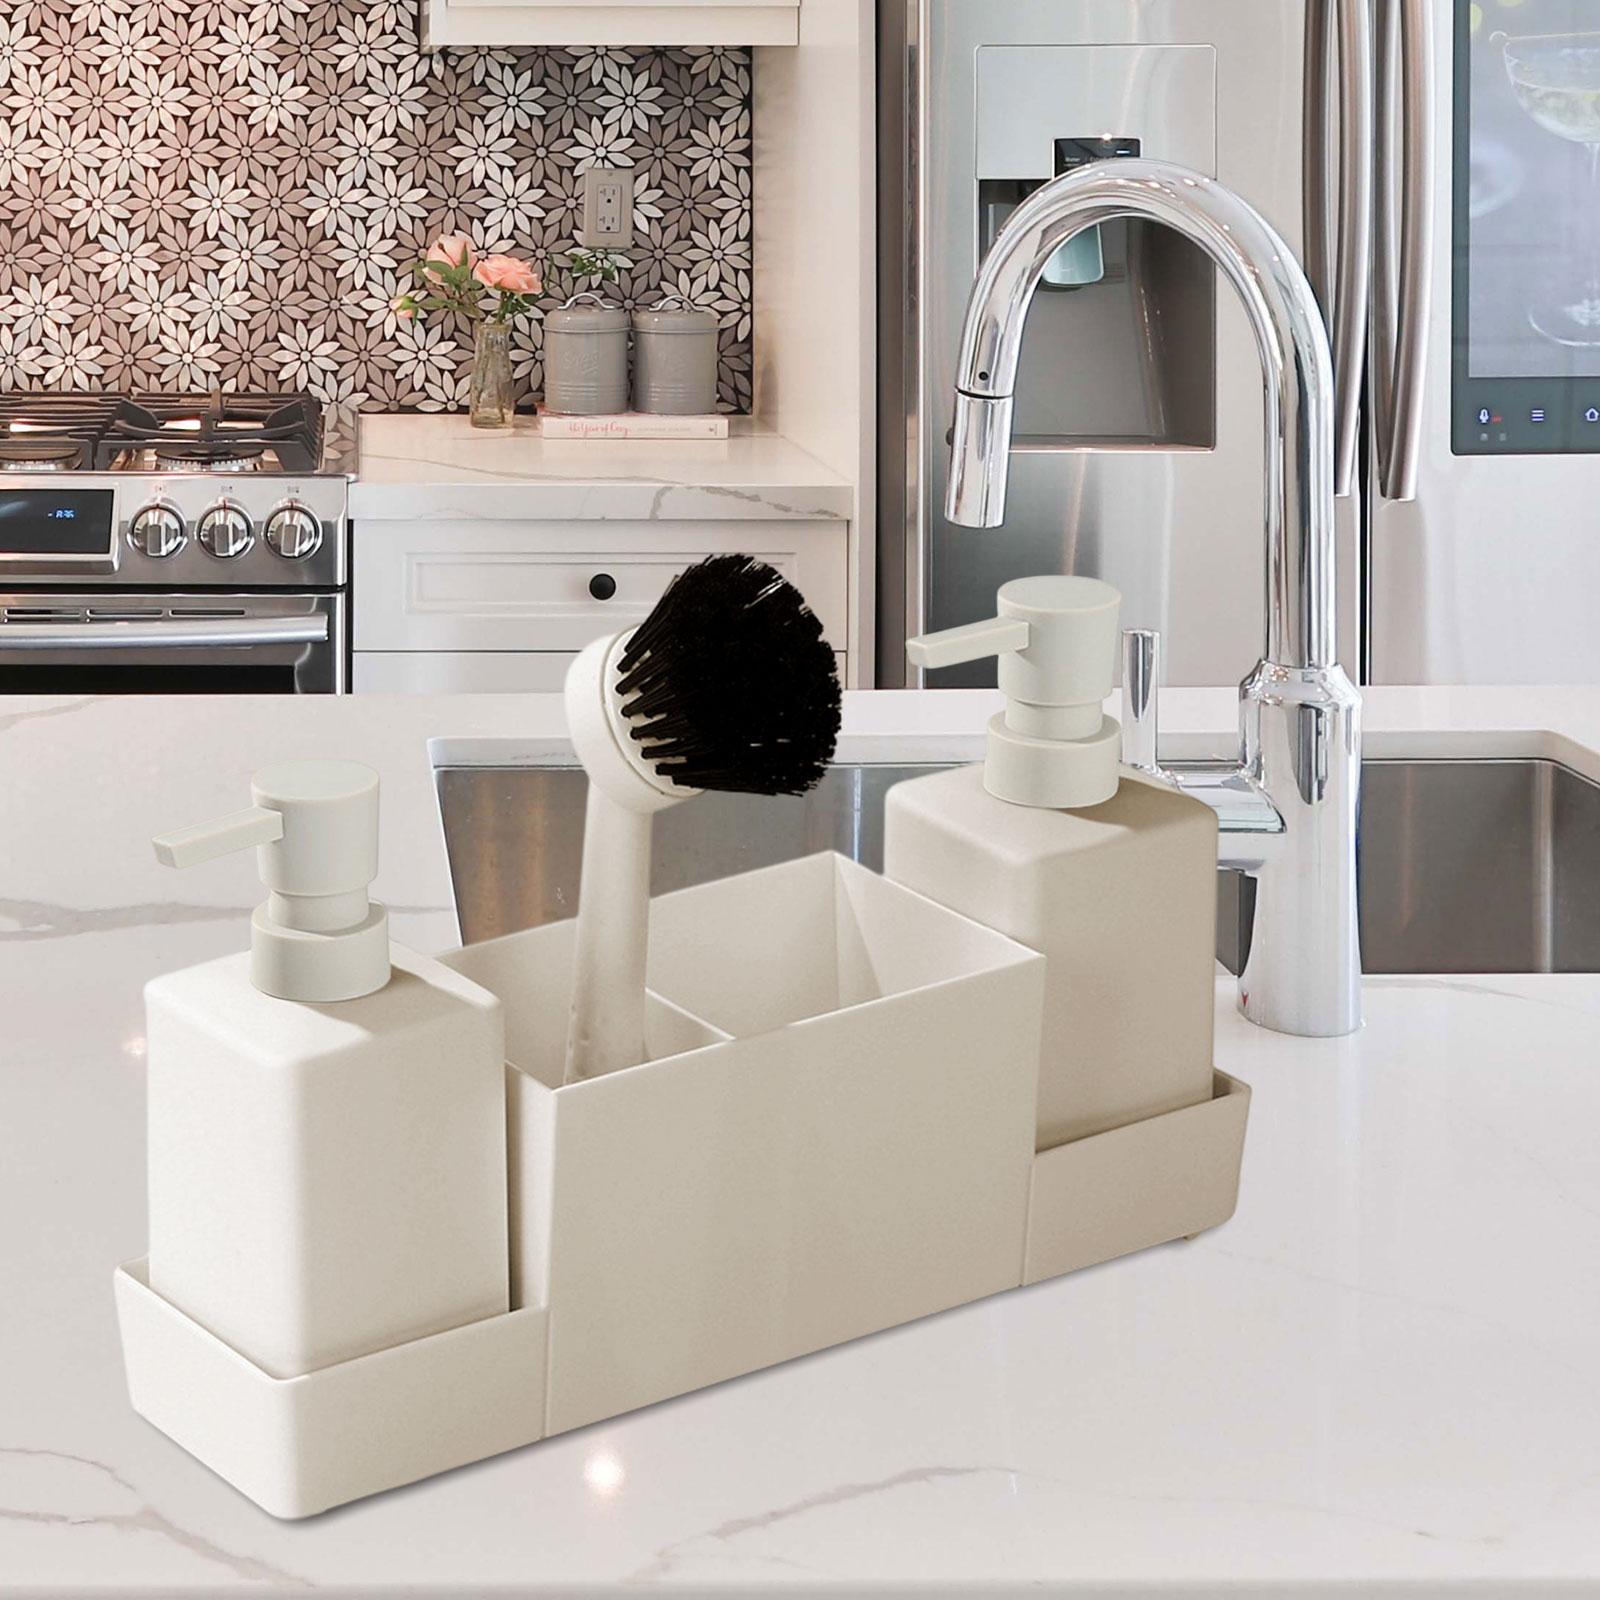 4x Kitchen Soap Dispenser with Sponge Holder Non Slip for Bathroom Home Sink